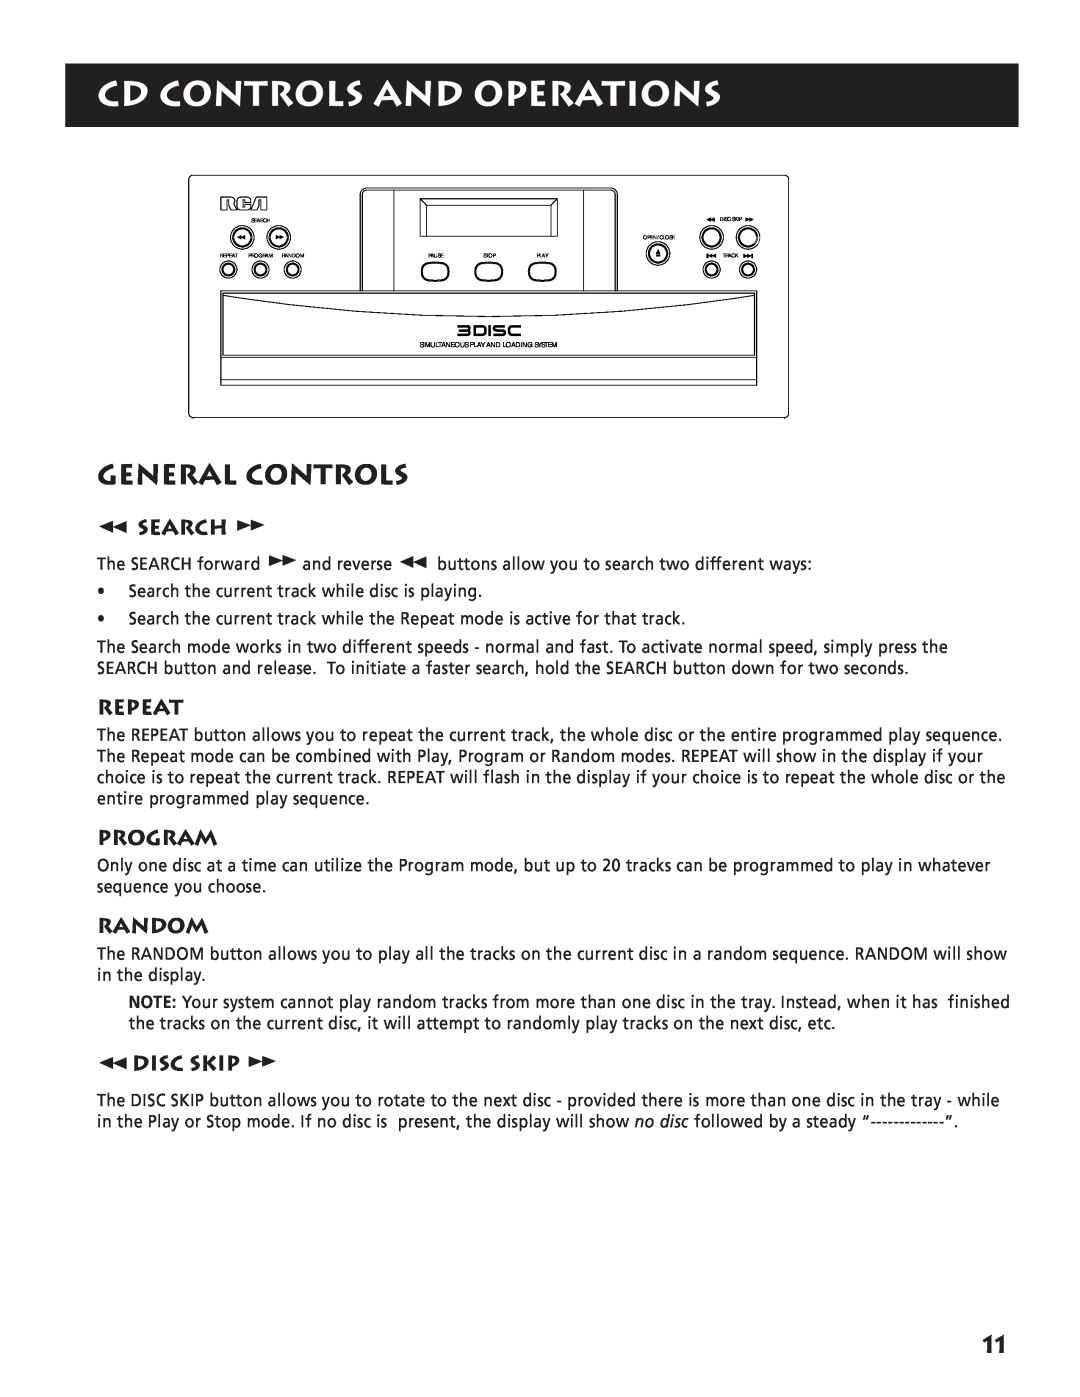 RCA RP-9380 manual Cd Controls And Operations, General Controls, Search, Repeat, Program, Random, Disc Skip 